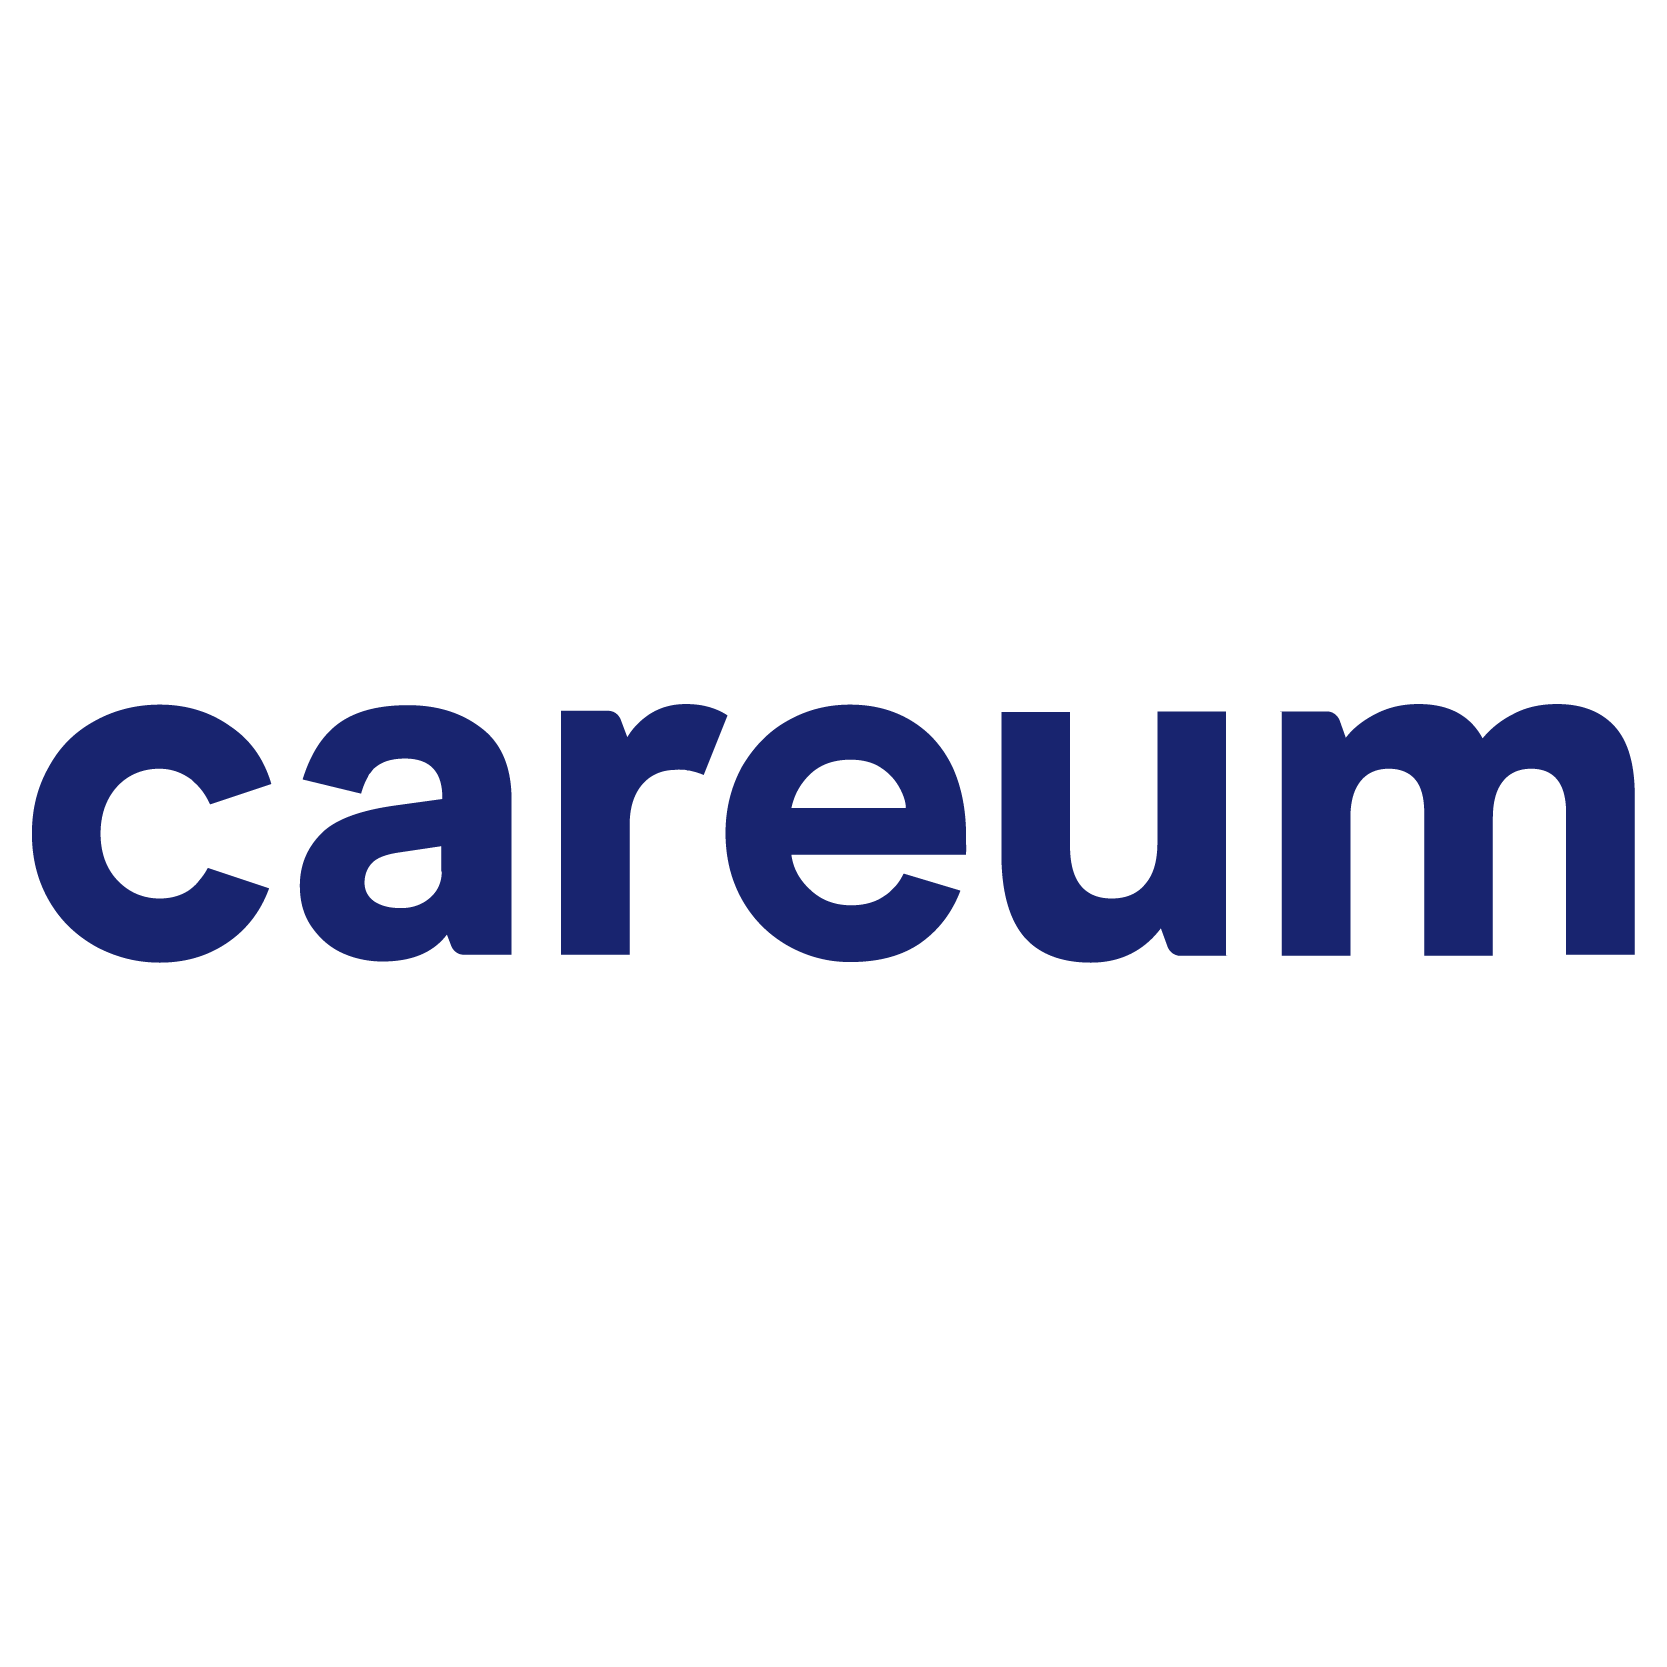 Careum